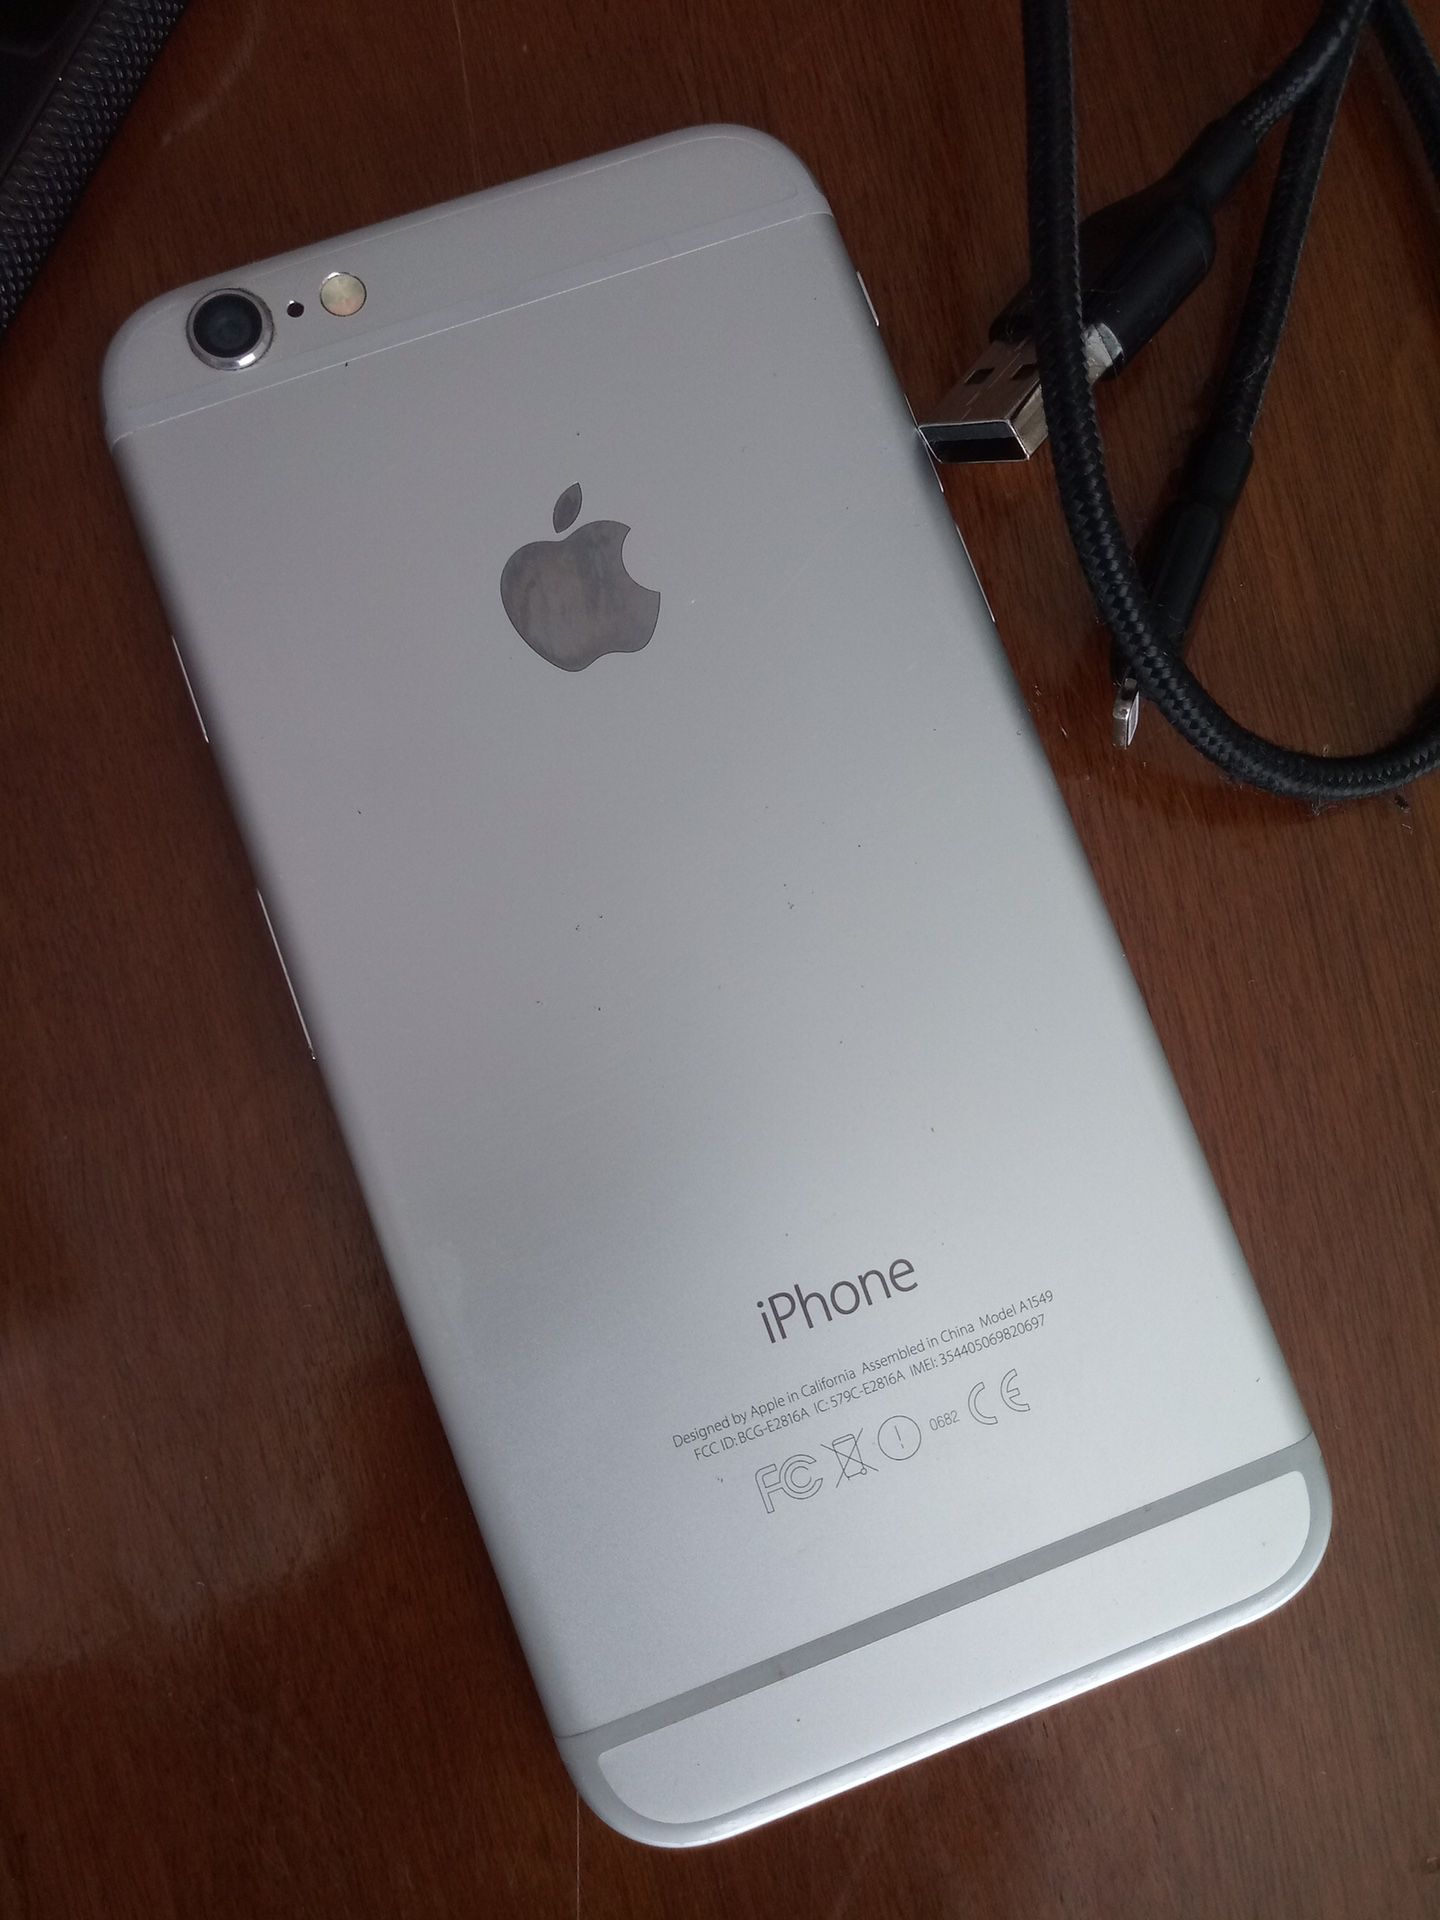 iPhone 6 “Sim-Unlocked” Clean iCloud and IMEI.